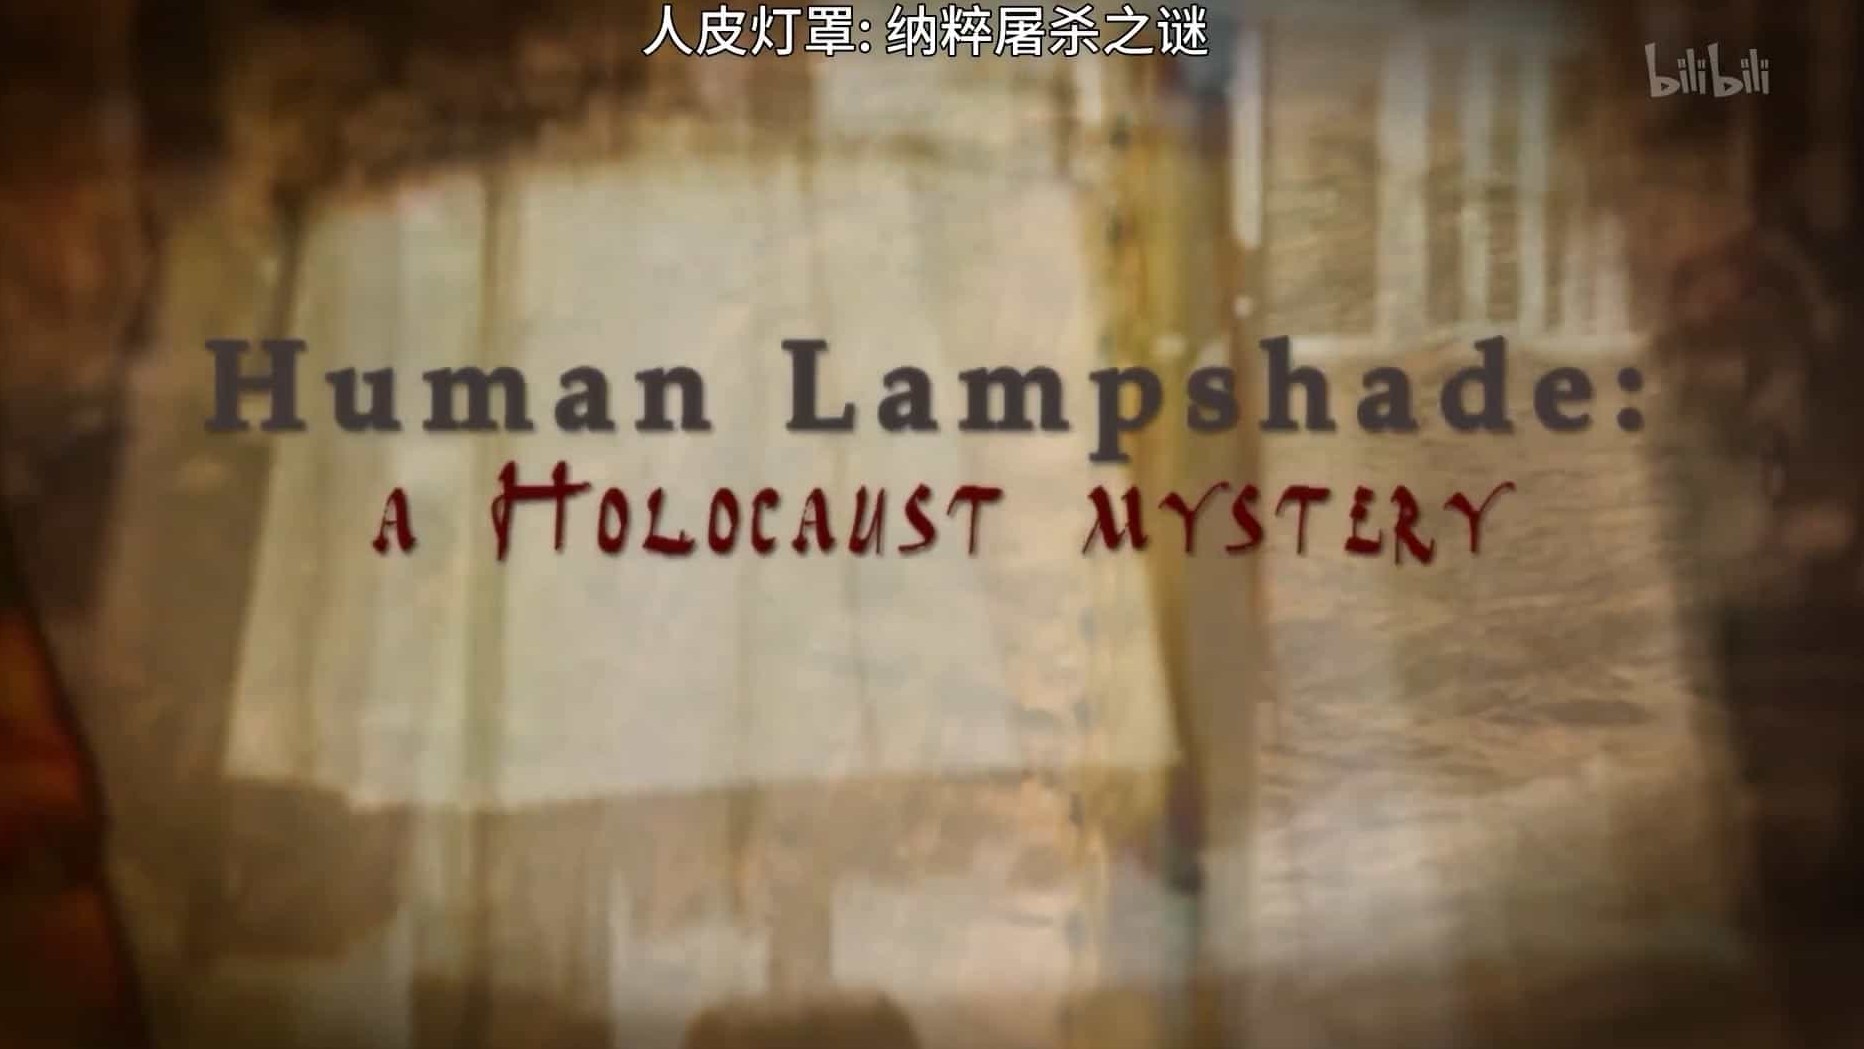 国家地理频道《人皮灯罩:纳粹屠杀之谜 Human Lampshade A Holocaust Mystery》英语在线中字 纪录片